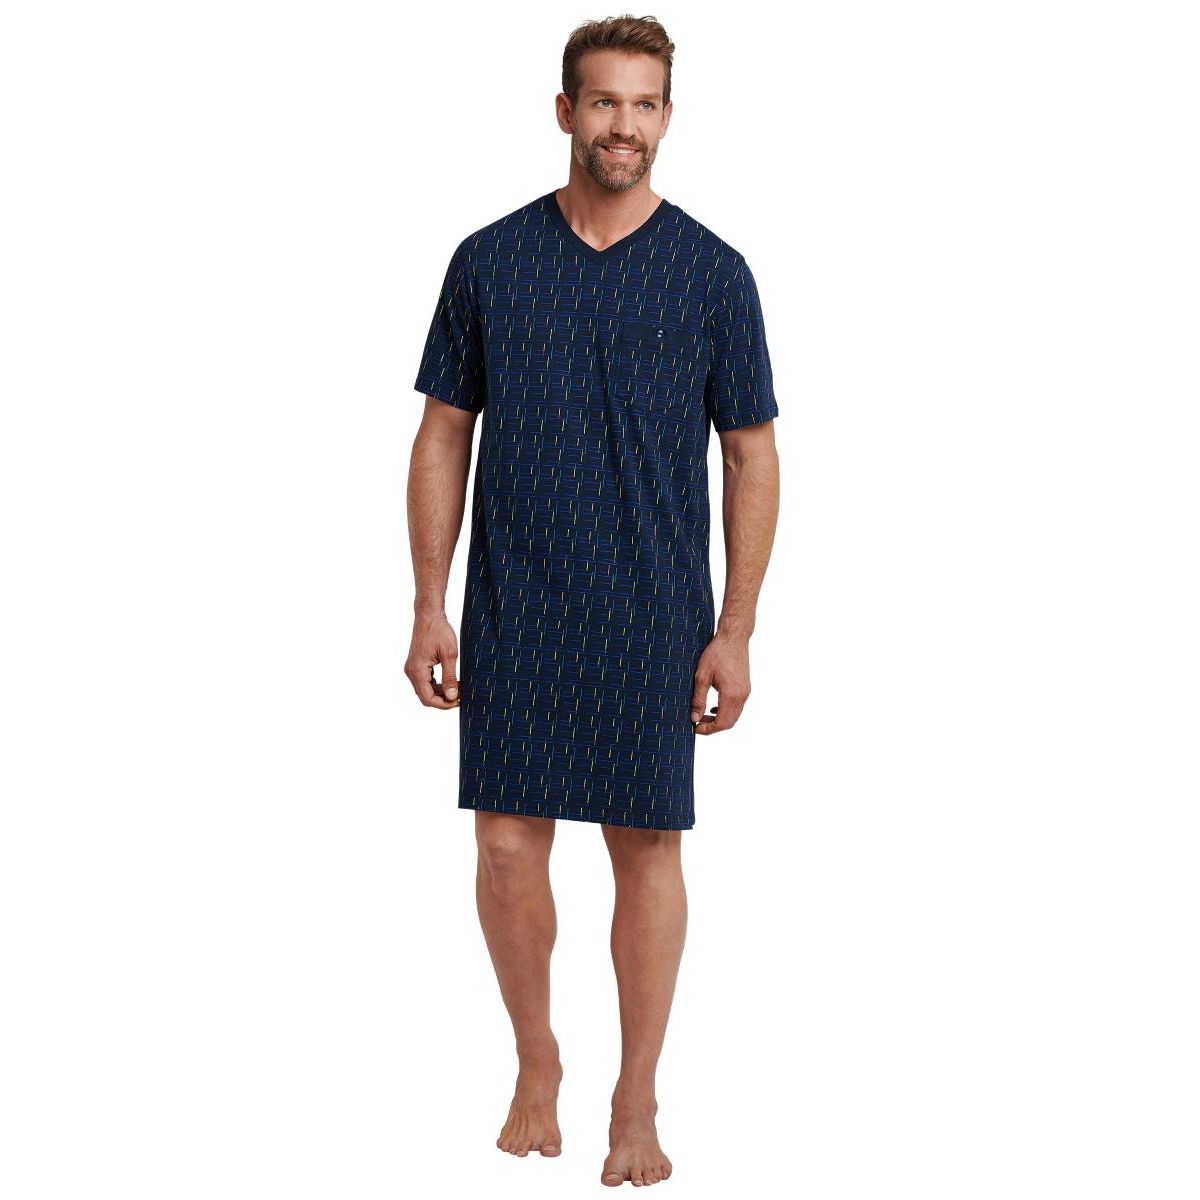 Schiesser heren nachthemd donkerblauw | Bestel eenvoudig online | | Snel in huis | Online mooiste pyjama's, nachthemden, ondermode en meer